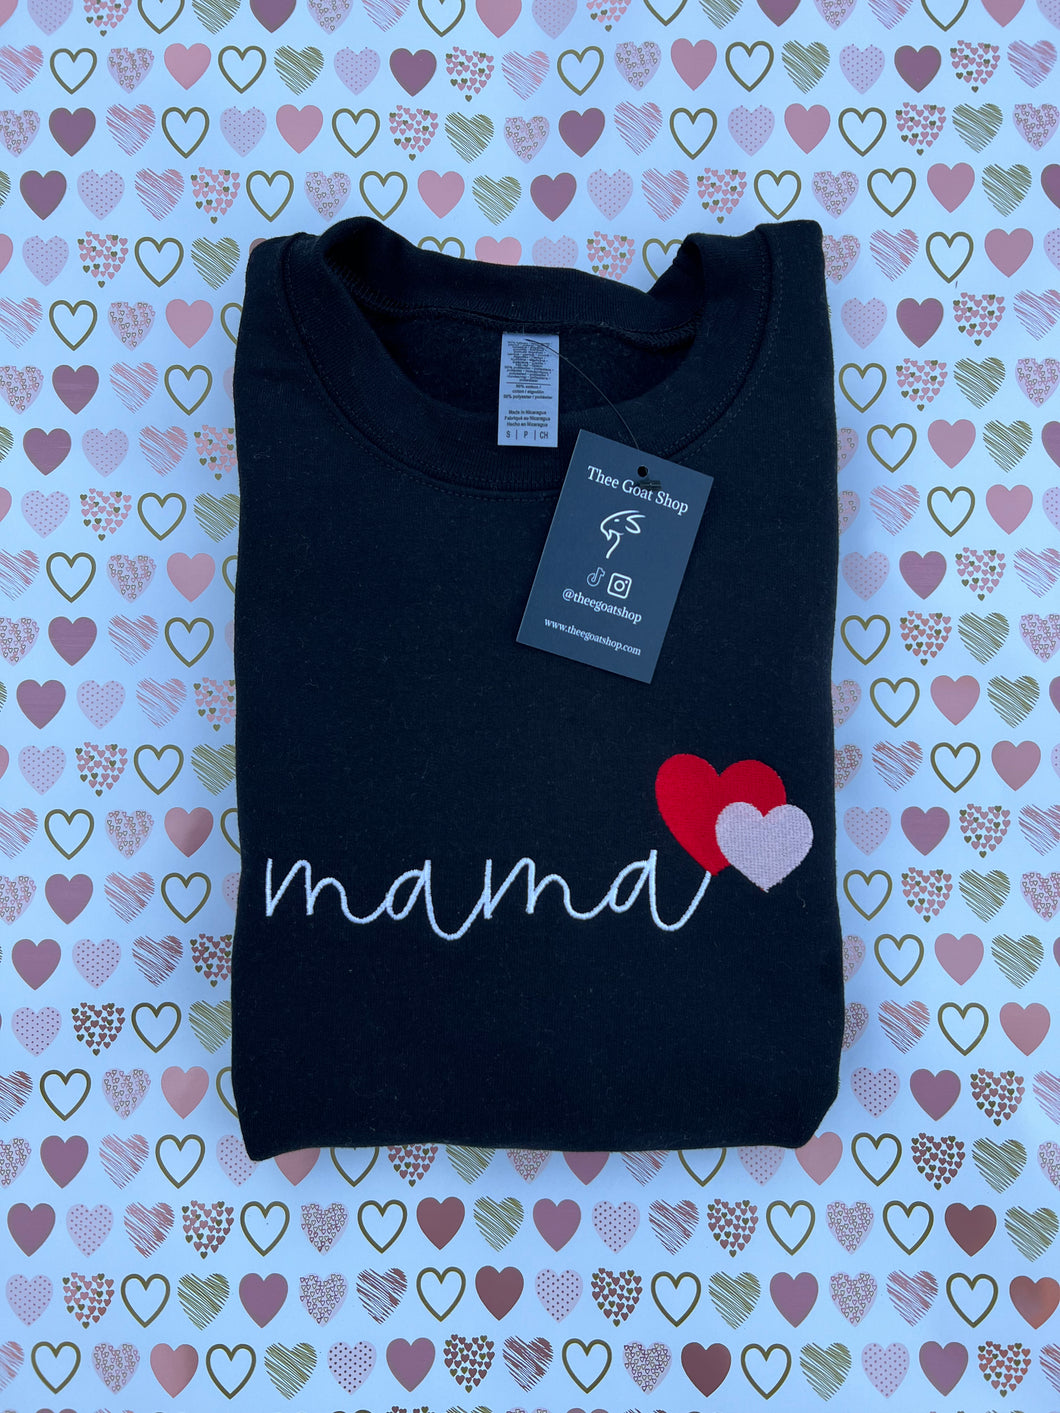 Mama love x2